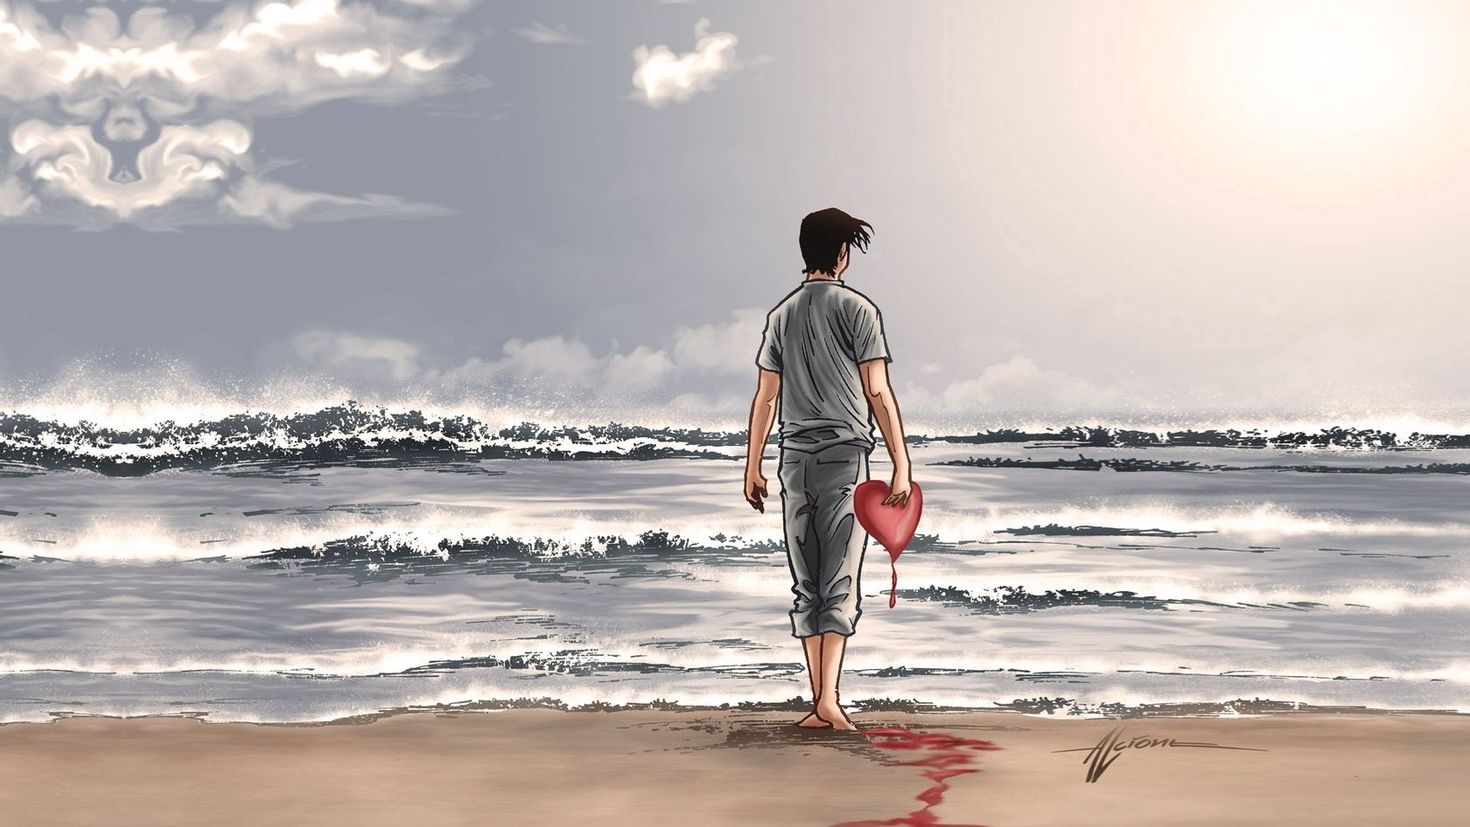 Май лов где то там вдалеке. Люди на море. Парень с сердцем. Одинокий человек на берегу моря. Человек с разбитым сердцем.